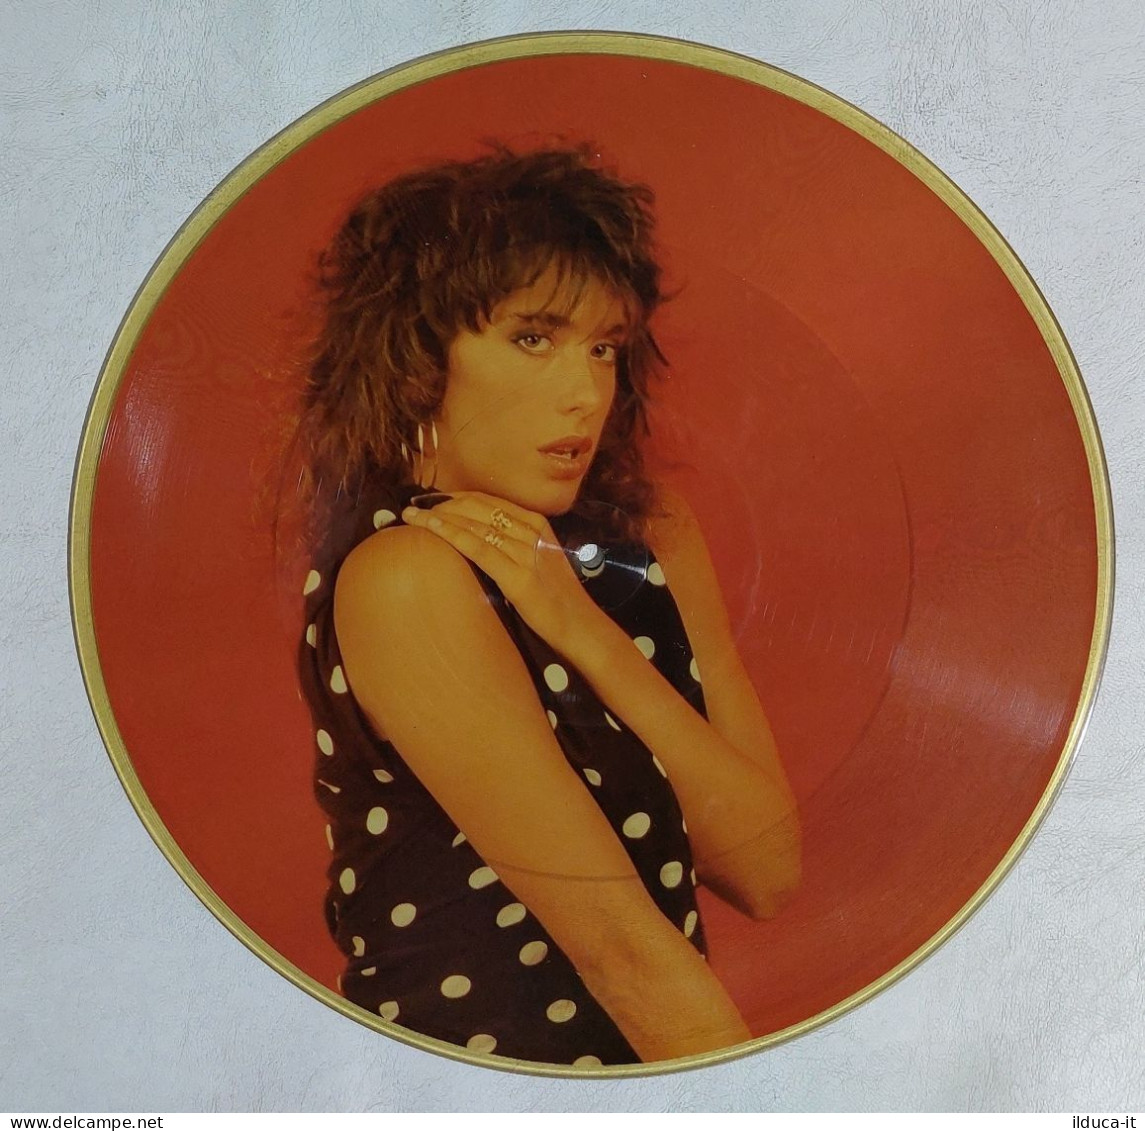 I114366 LP 33 Giri Picture Disc - Sabrina Salerno - Hot Girl - Five 1987 - Limitierte Auflagen